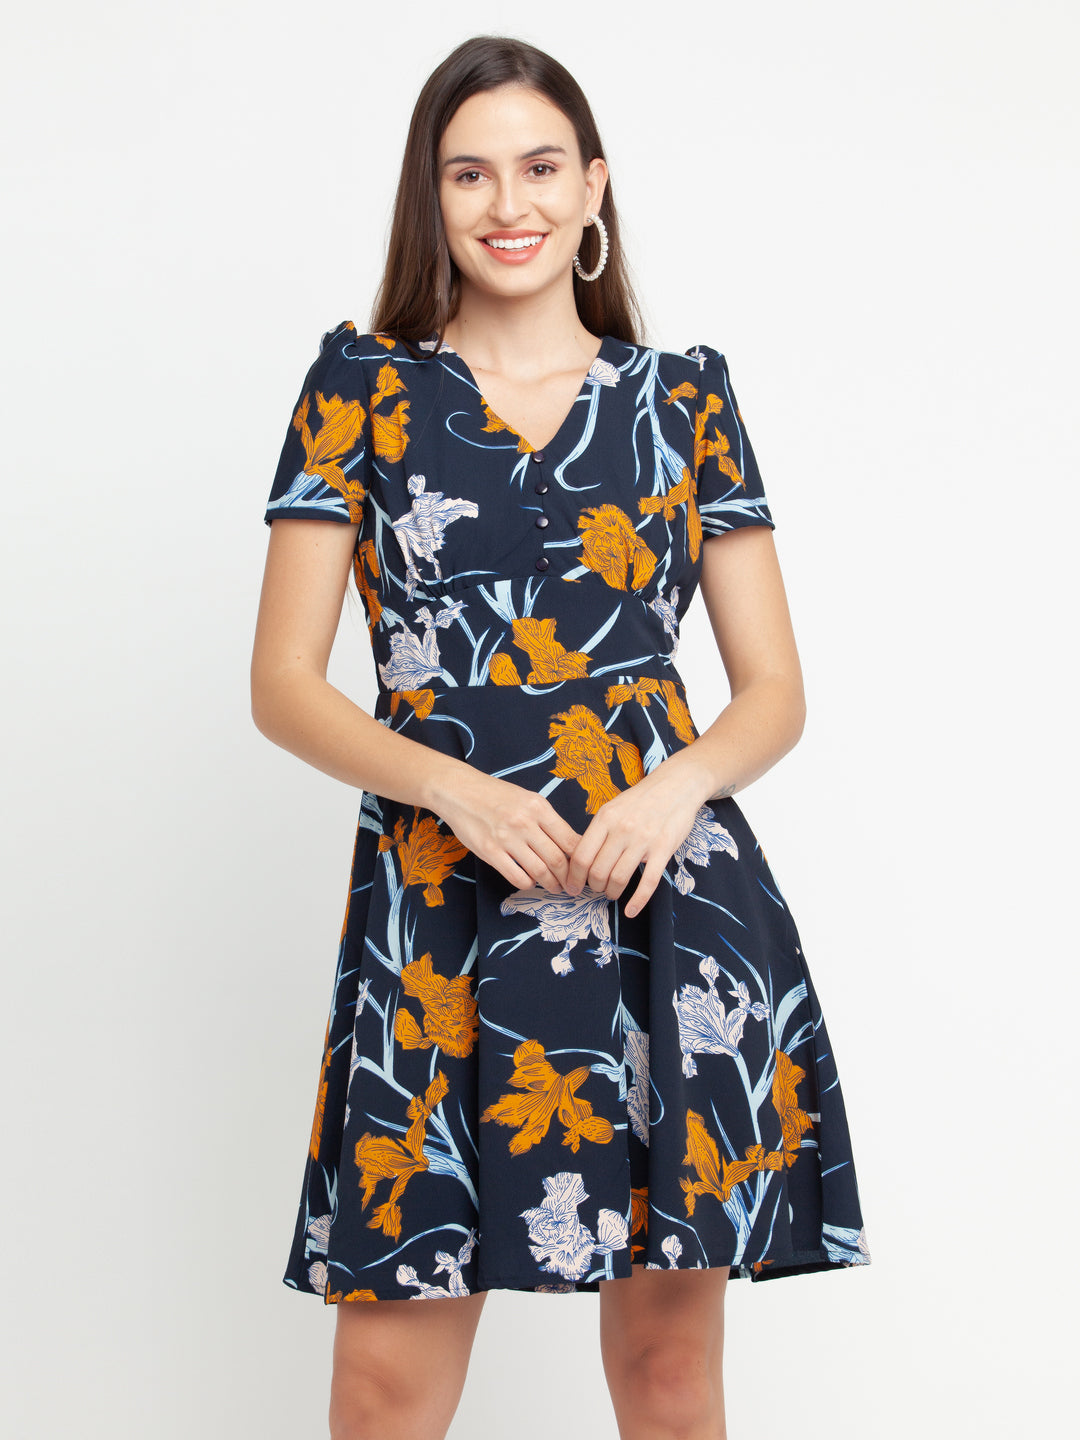 Blue Floral Print Women's Puff Sleeve Short Dress for Women